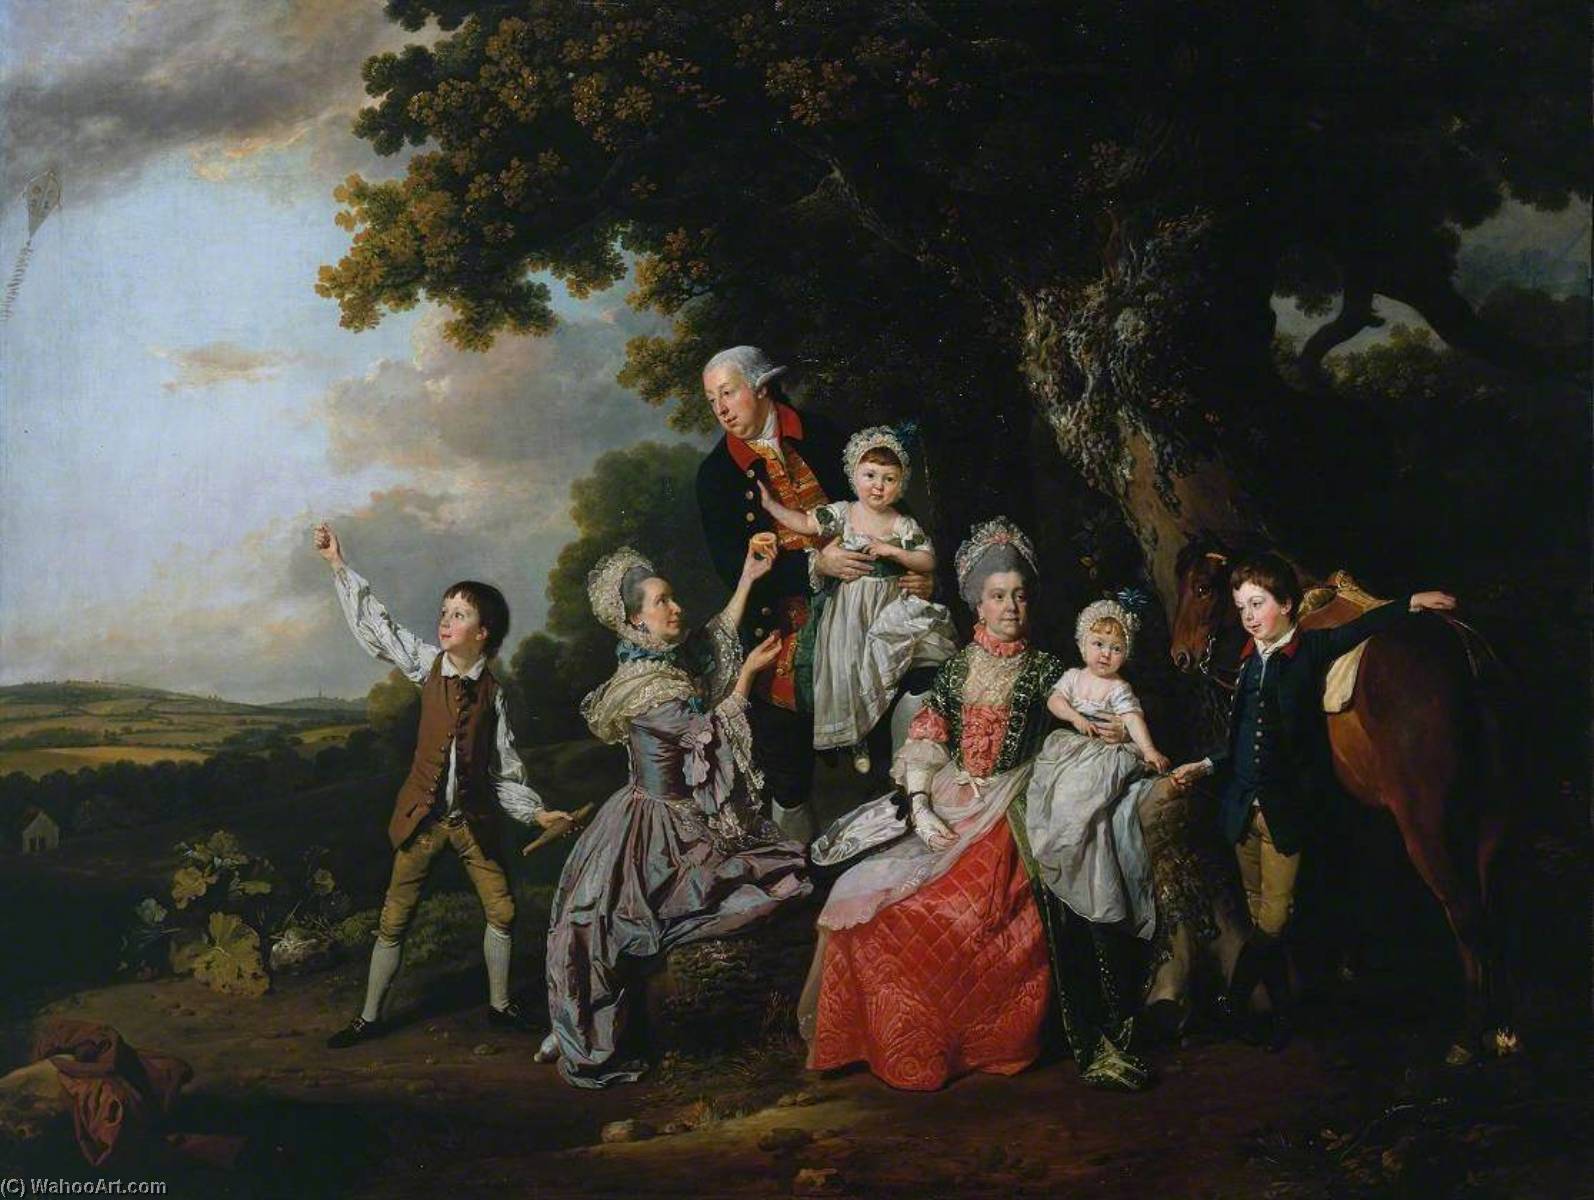 WikiOO.org - Encyclopedia of Fine Arts - Maleri, Artwork Johann Zoffany - The Bradshaw Family